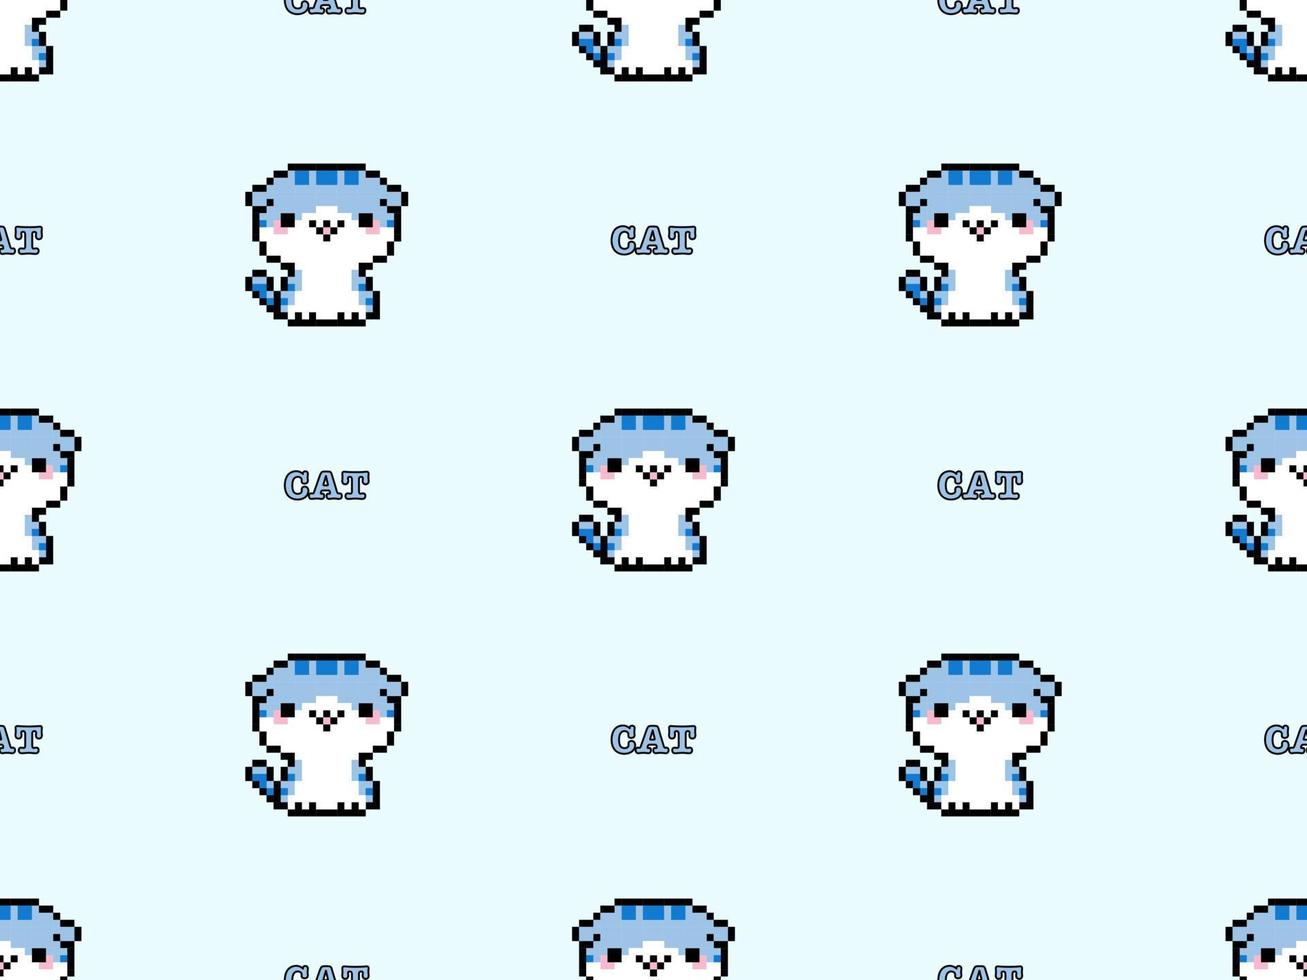 nahtloses muster der katzenzeichentrickfigur auf blauem hintergrund. Pixel-Stil vektor